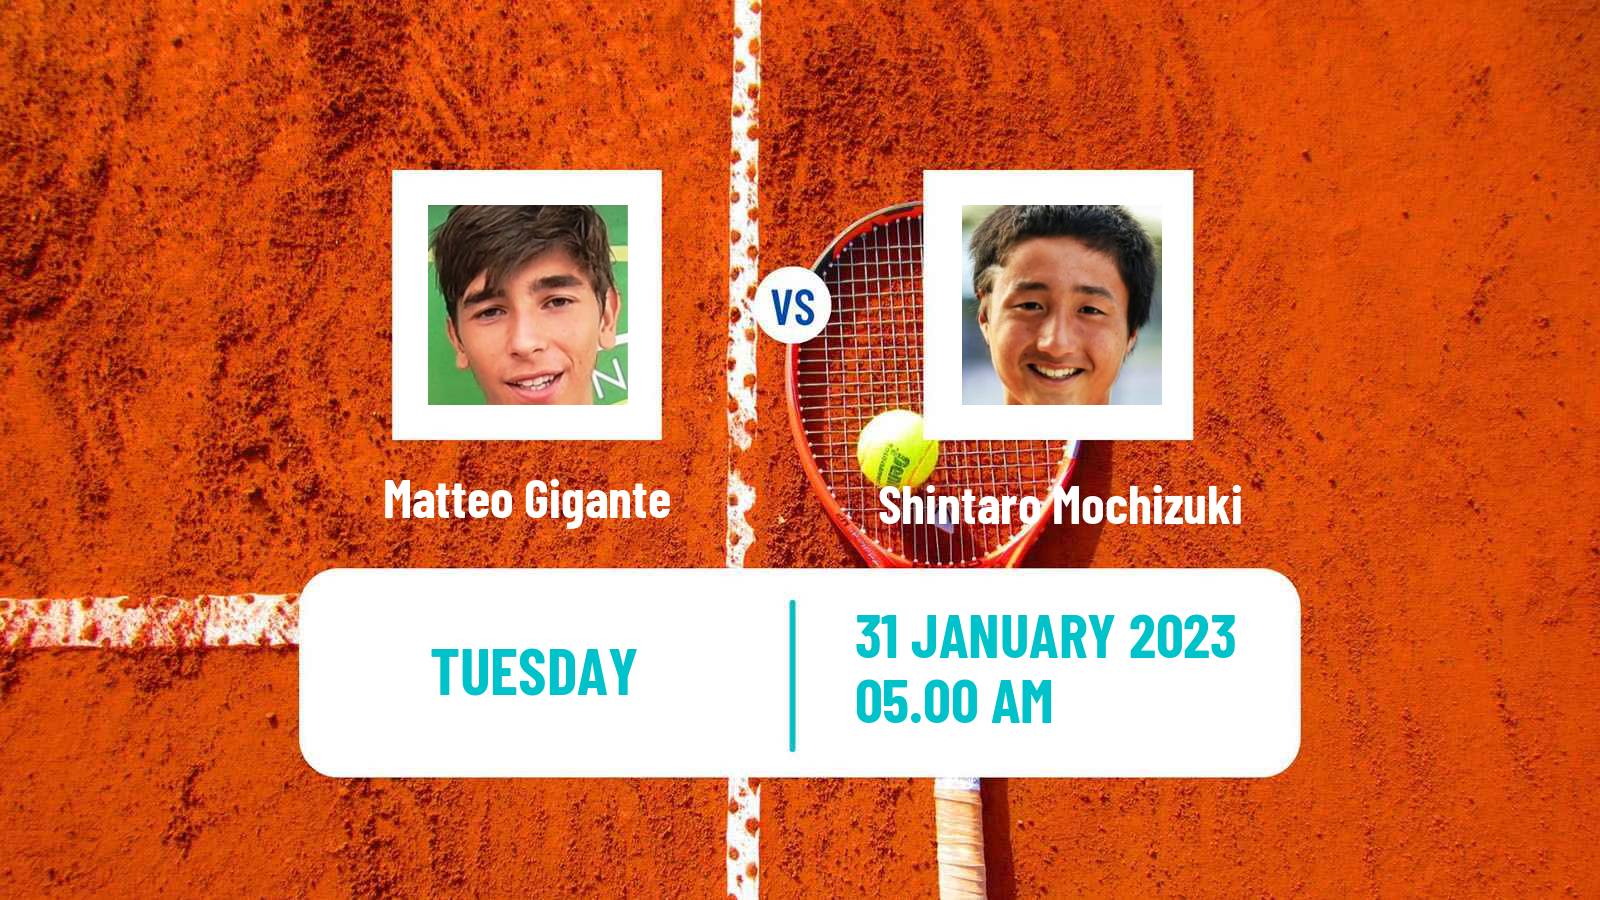 Tennis ATP Challenger Matteo Gigante - Shintaro Mochizuki